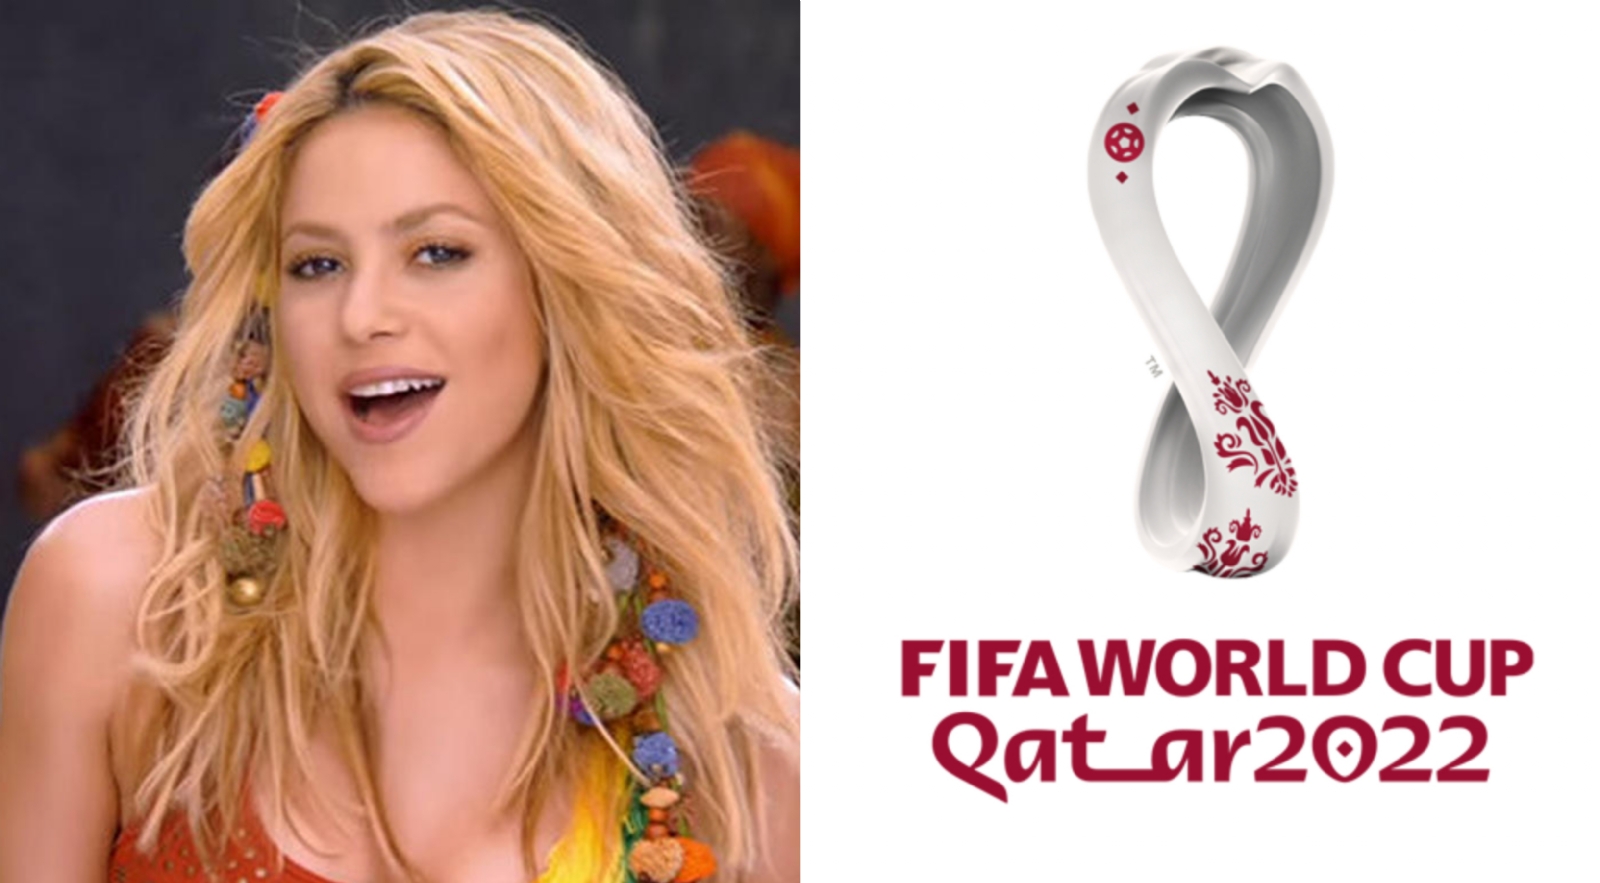 Los rumores sobre Shakira en Qatar 2022 se hacen más fuertes